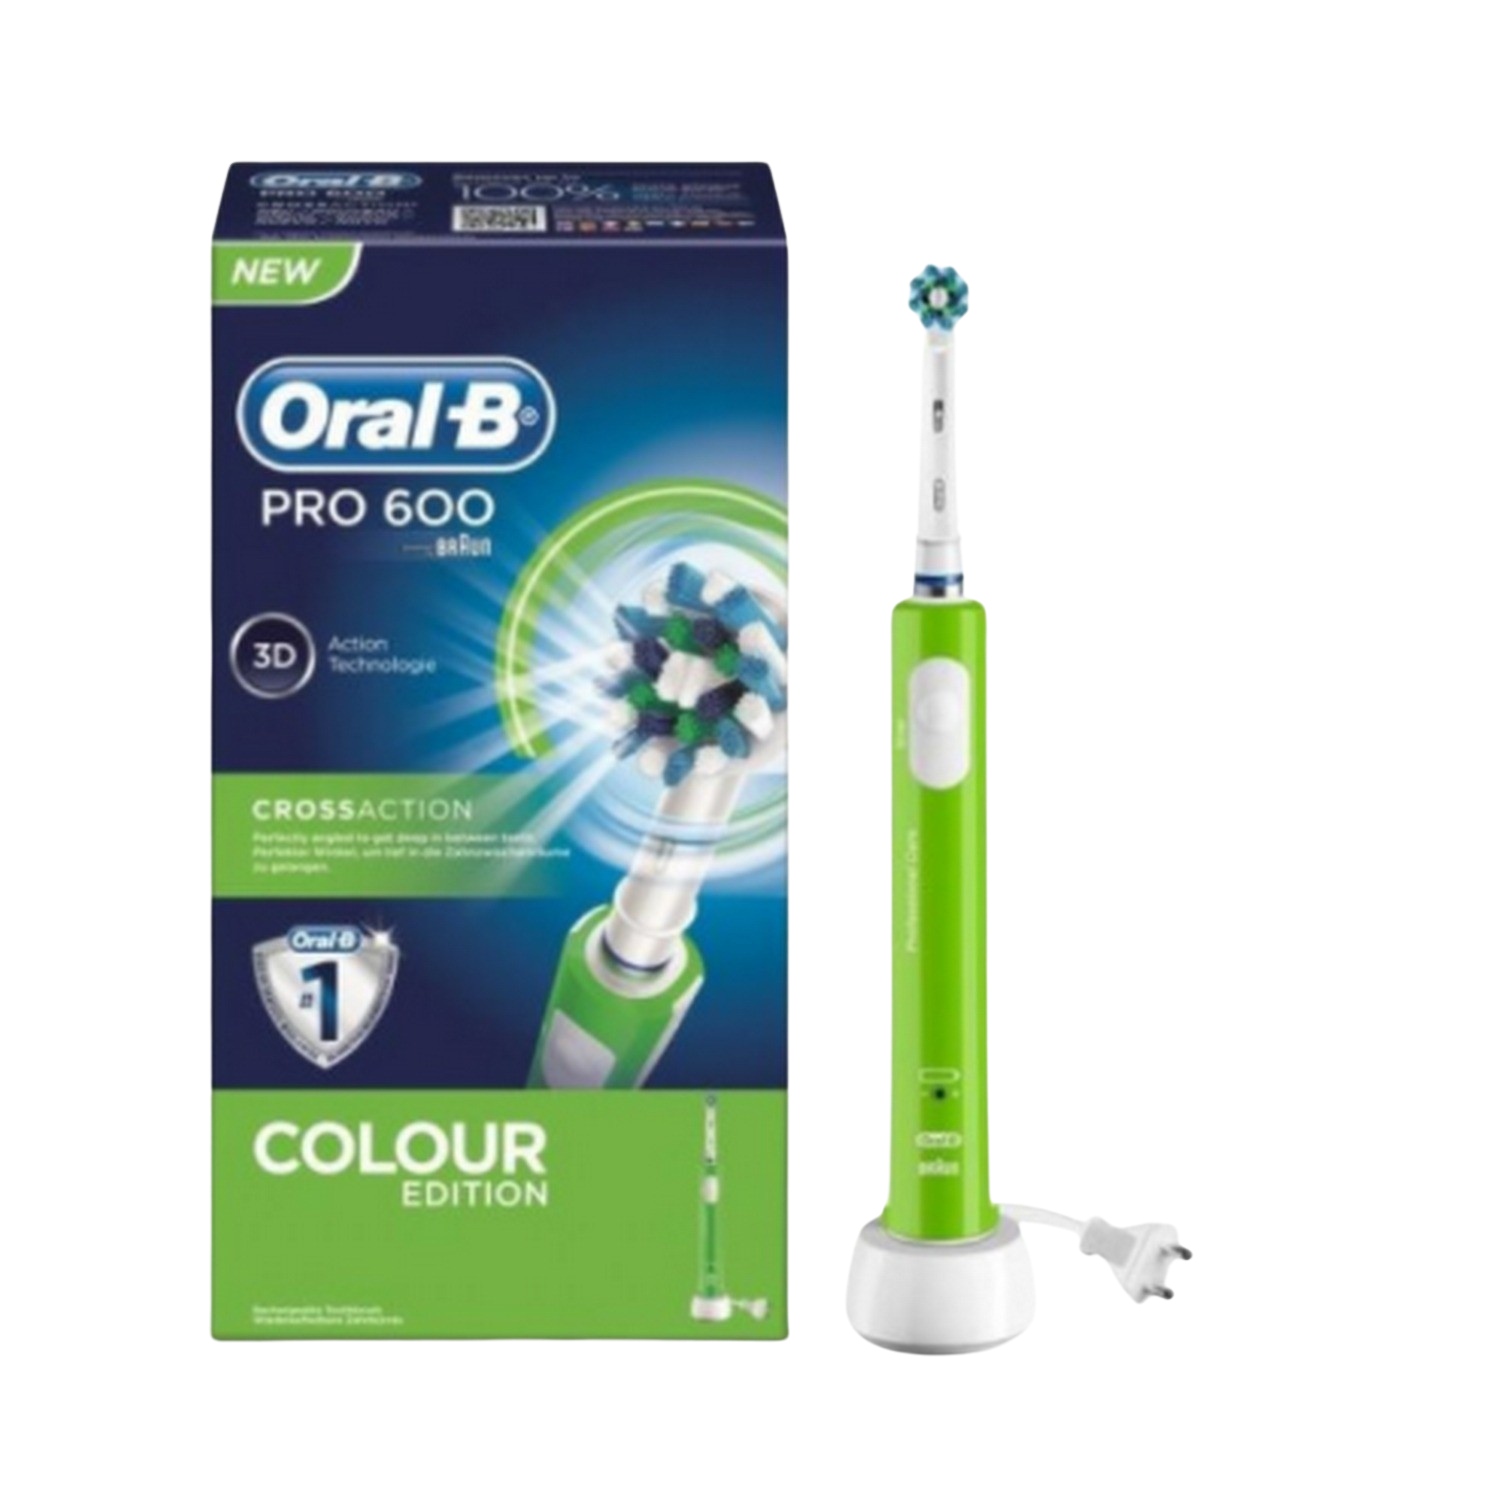 Cepillo Dental Braun oralb pro 600 verde crossaction dientes con mango recargable tecnología y 1 cabezal recambio pro600 action 8.800 rpm adulto 3d